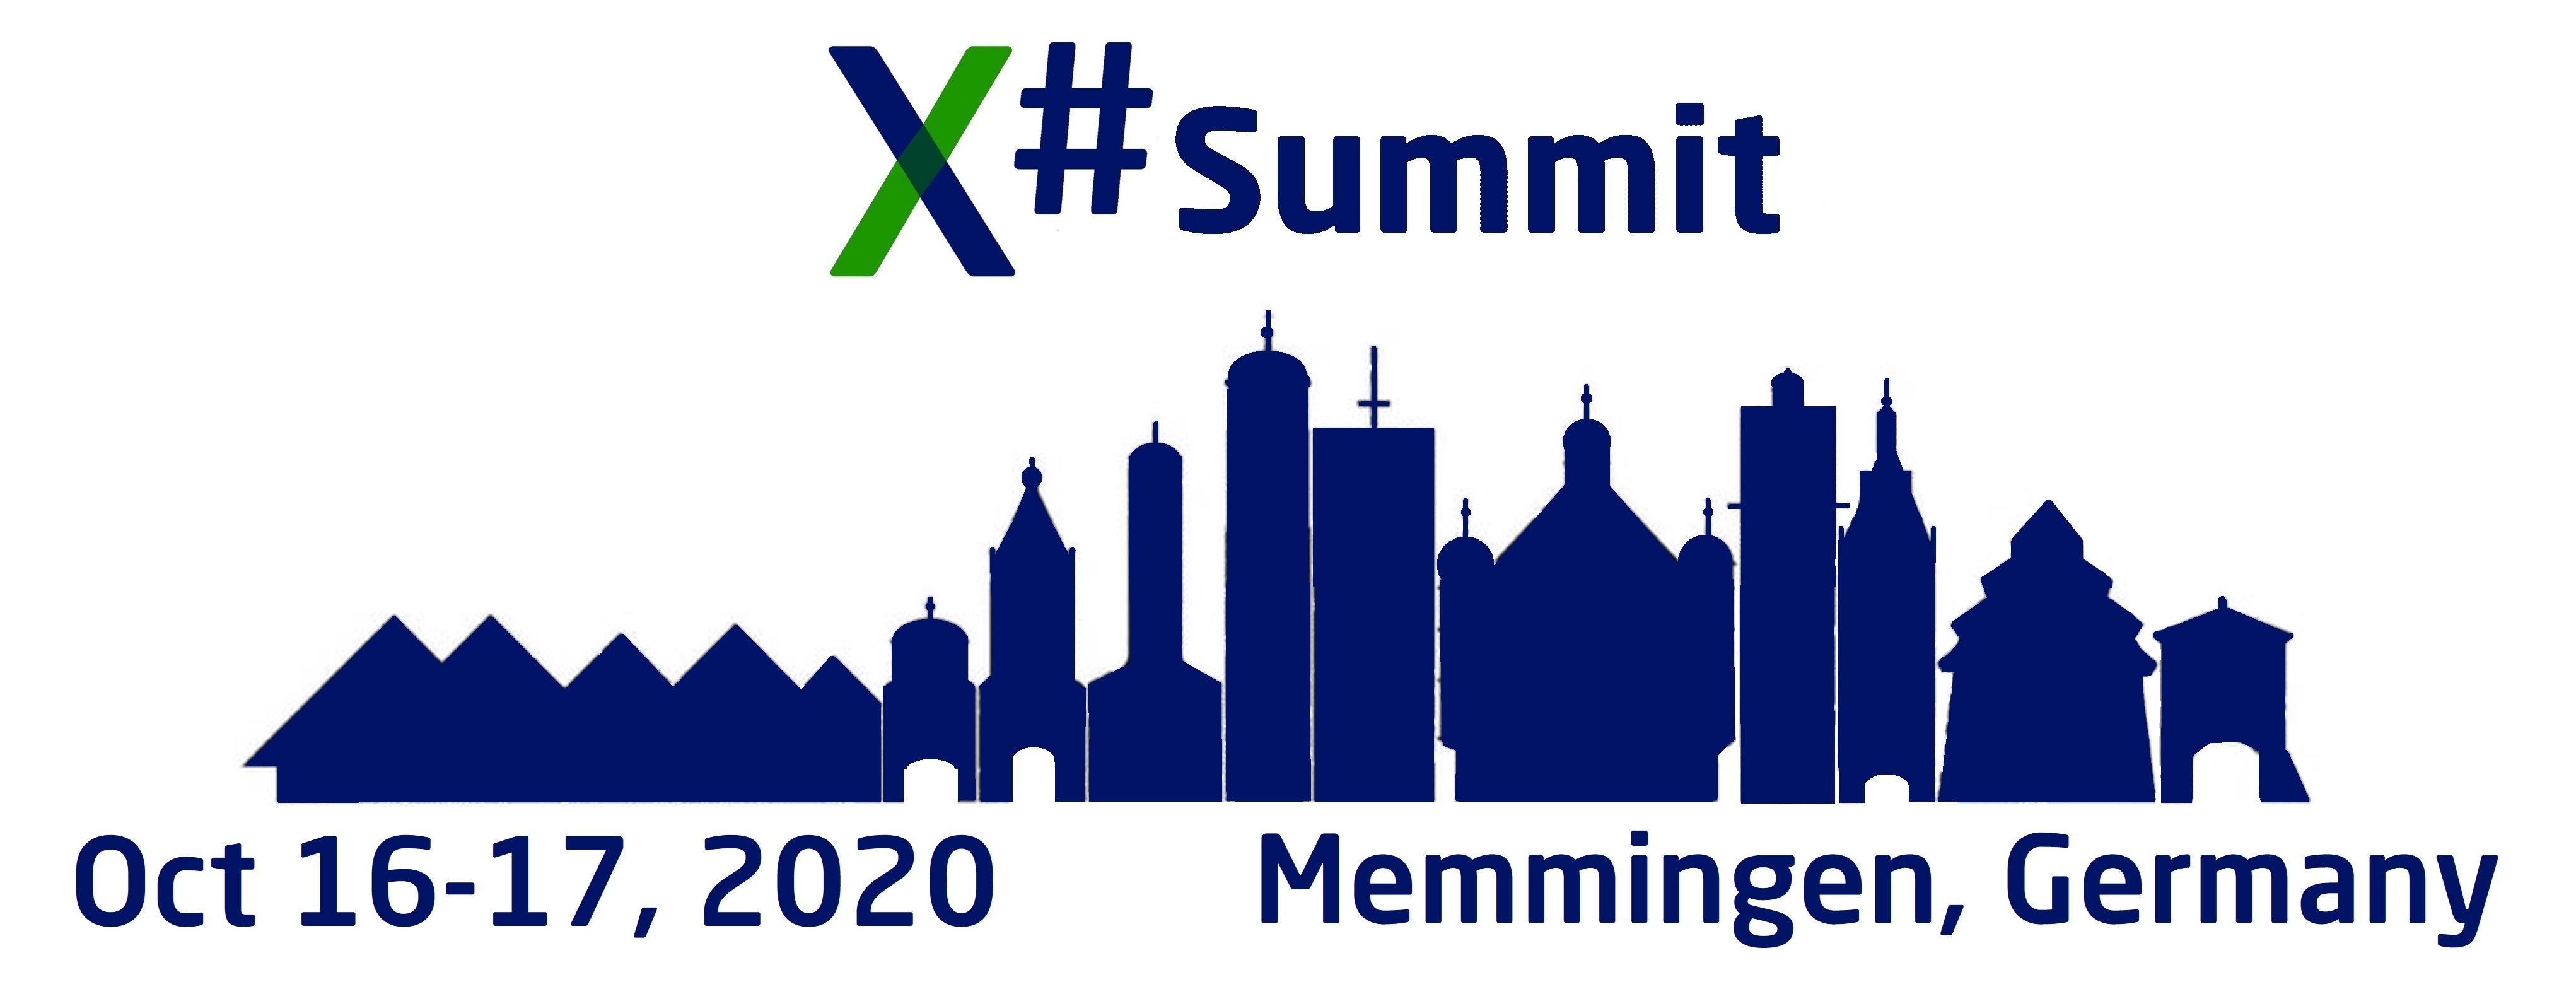 X# Summit Memmingen 2020